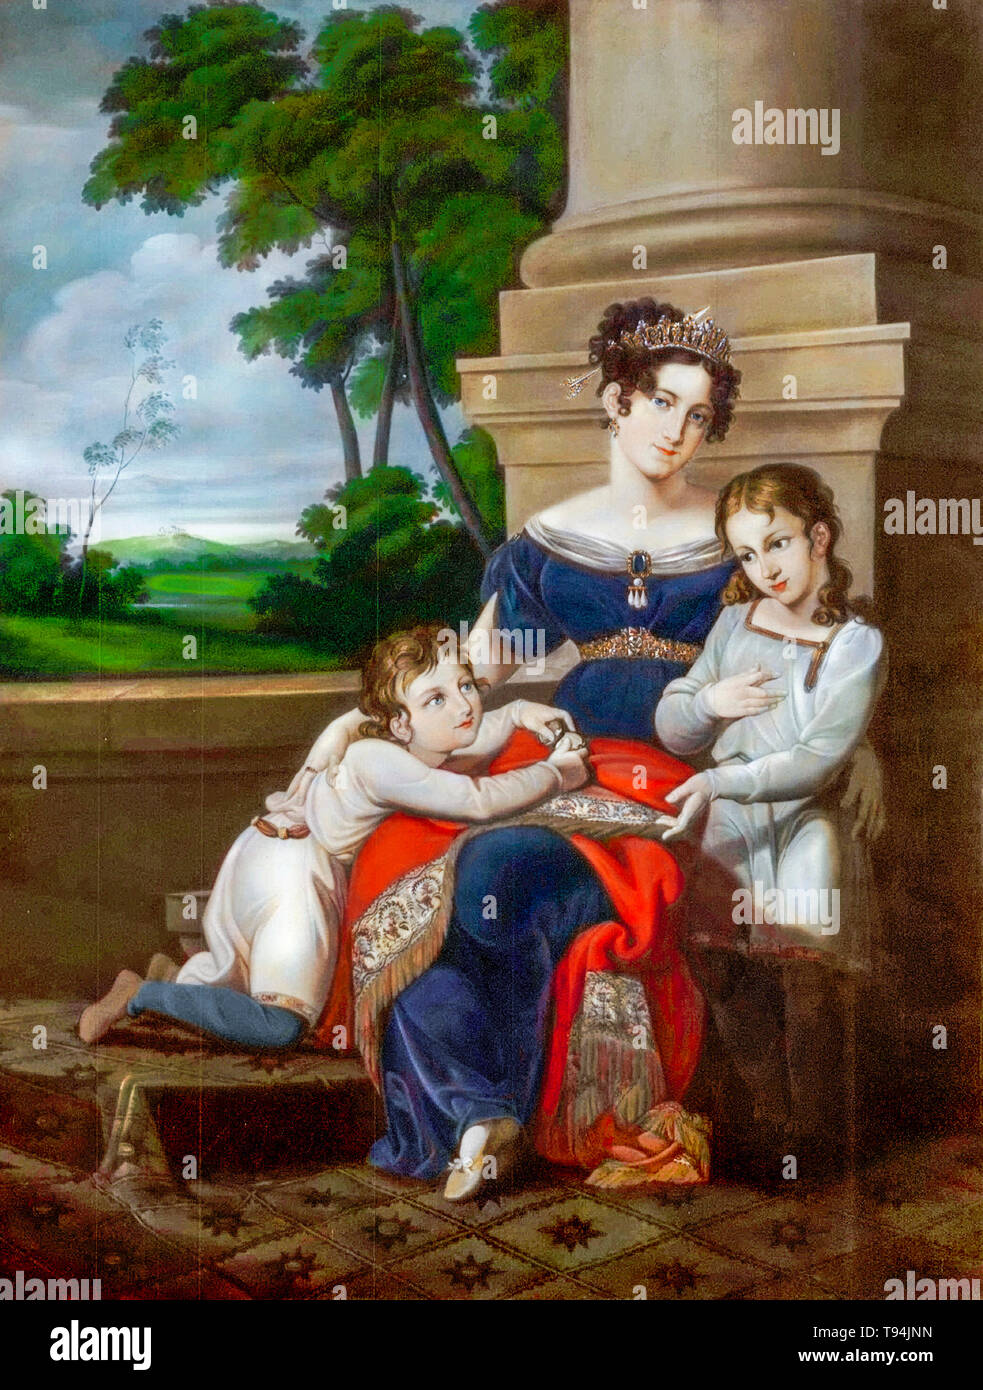 Louise von Sachsen-Gotha-Altenburg, (1800-1831), herzogin von Sachsen-Coburg und Gotha, mit ihren Kindern, Albert, (1819-1861), zukünftiger Ehemann von Königin Victoria, und Ernest, (1818-1893), zukünftiger Herzog von Sachsen-Coburg und Gotha, Familienportrait von Ludwig Döll, um 1823 Stockfoto